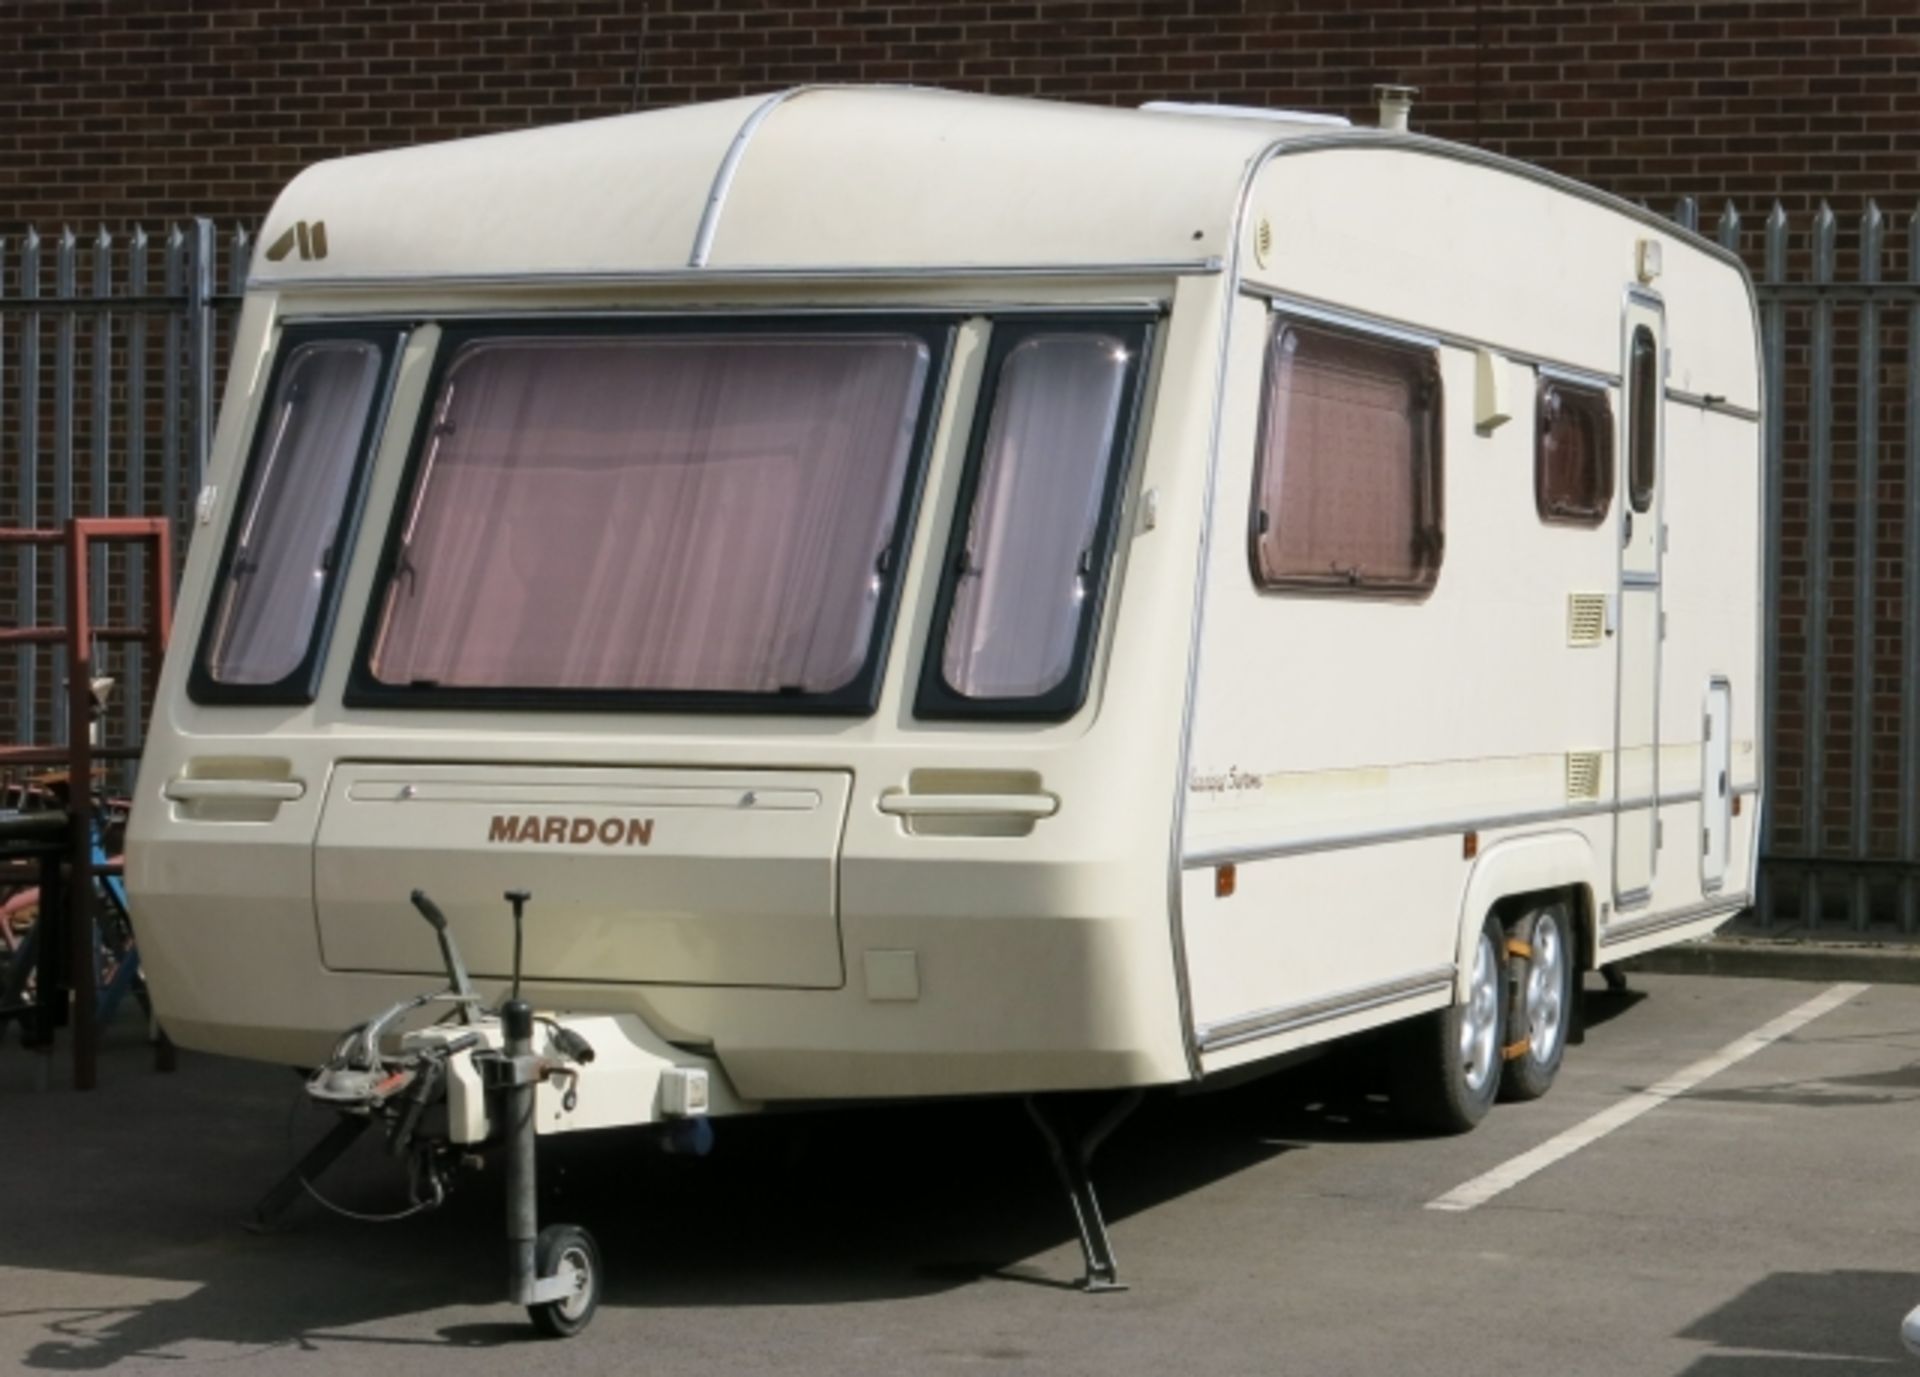 A Mardon Classique Supreme 550/4 Caravan.  The twin axle caravan has mains electric and bottled